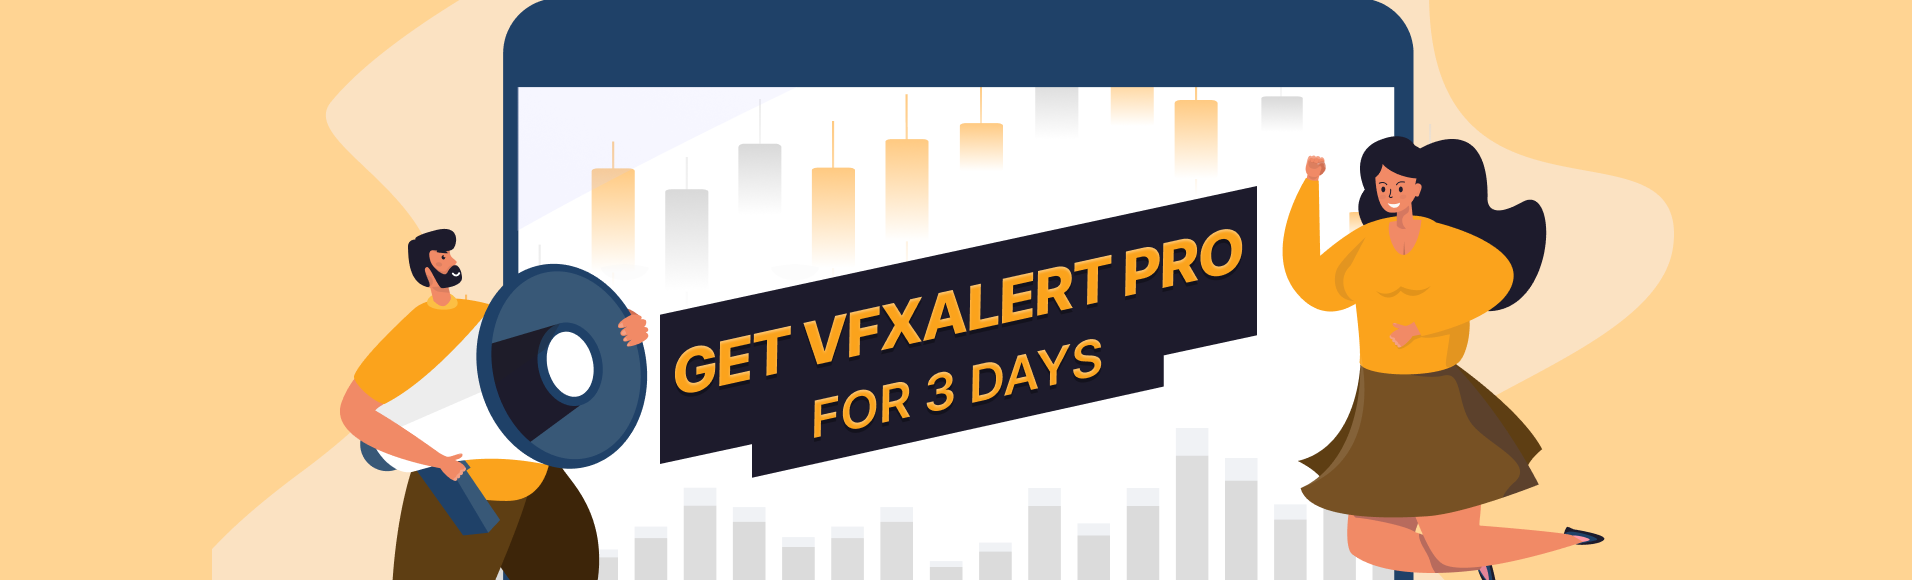 Terma dan syarat promosi  vfxAlert PRO selama 3 hari 